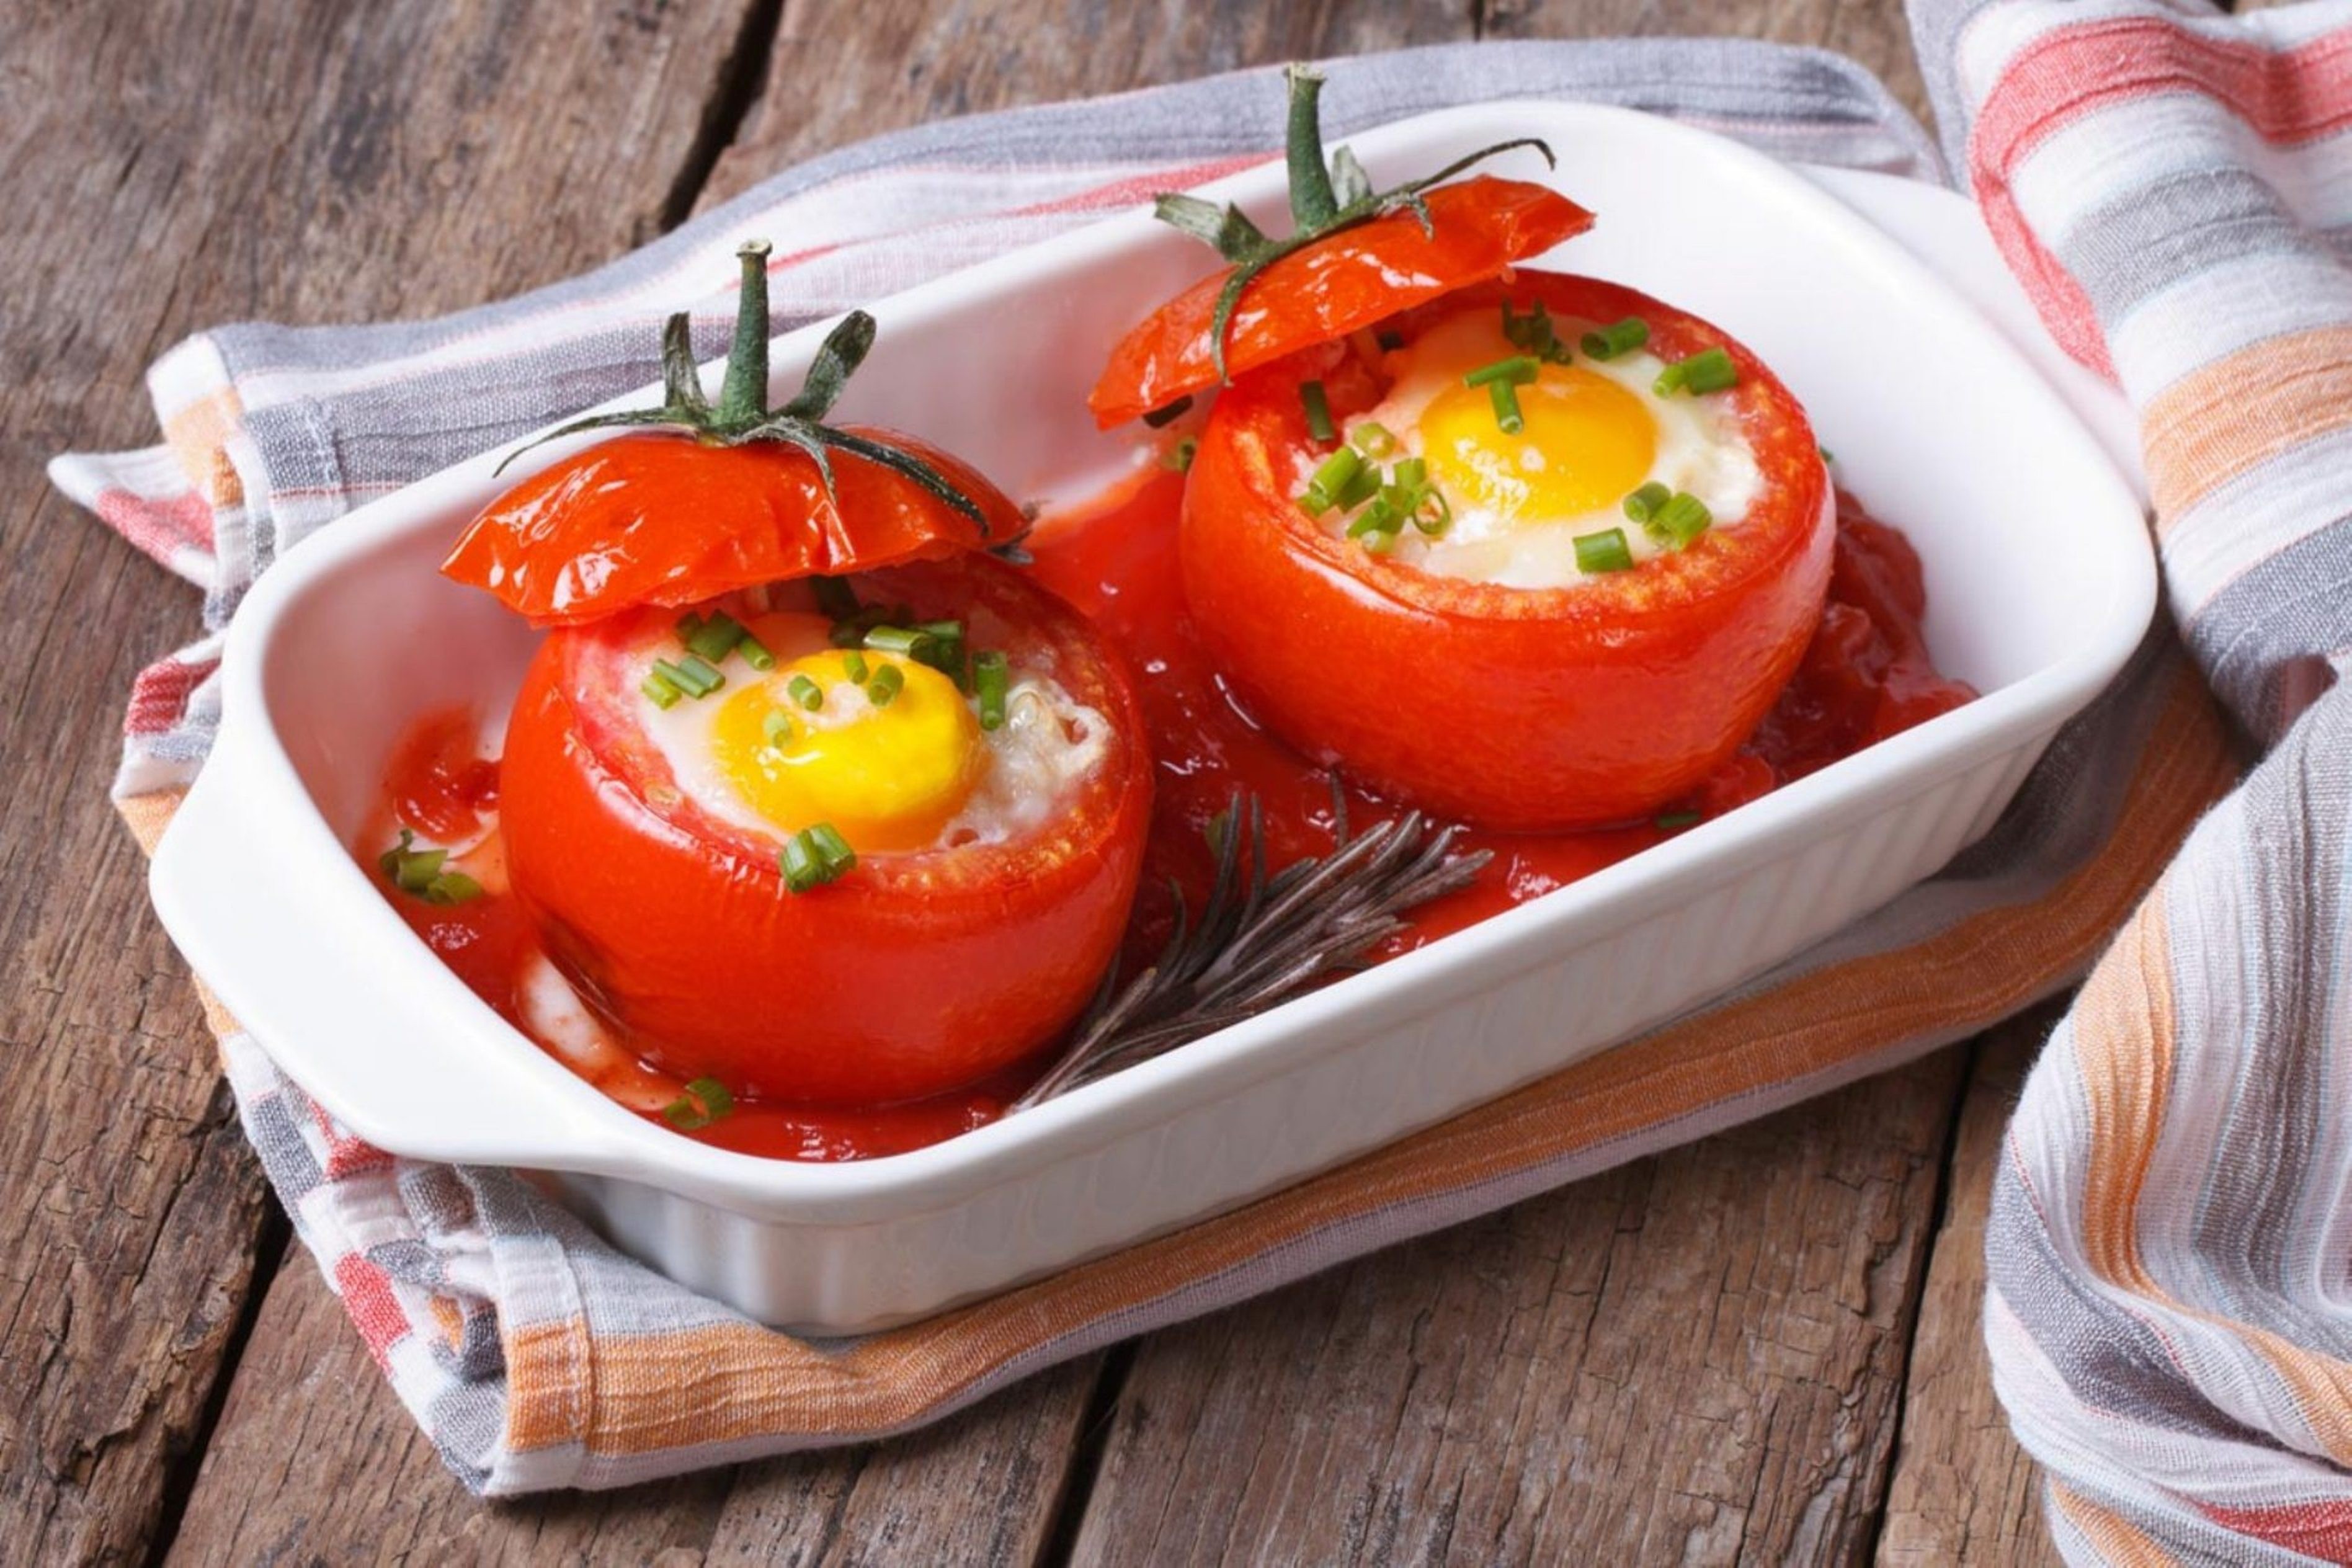 Os tomates recheados com ovo (Foto: Divulgação)